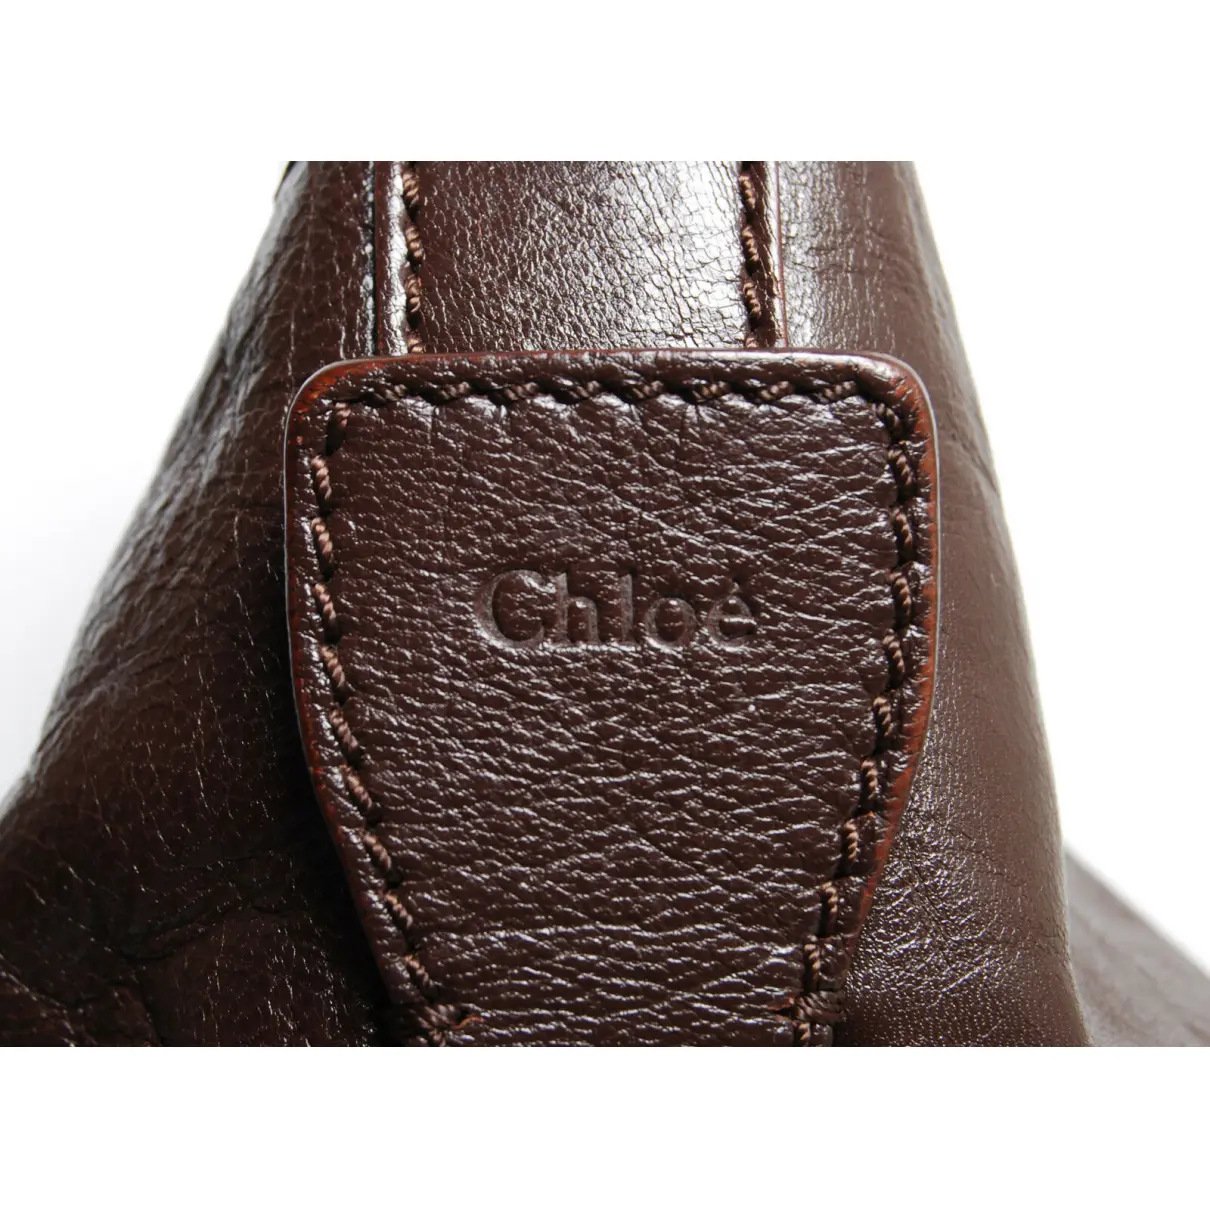 Leather handbag Chloé